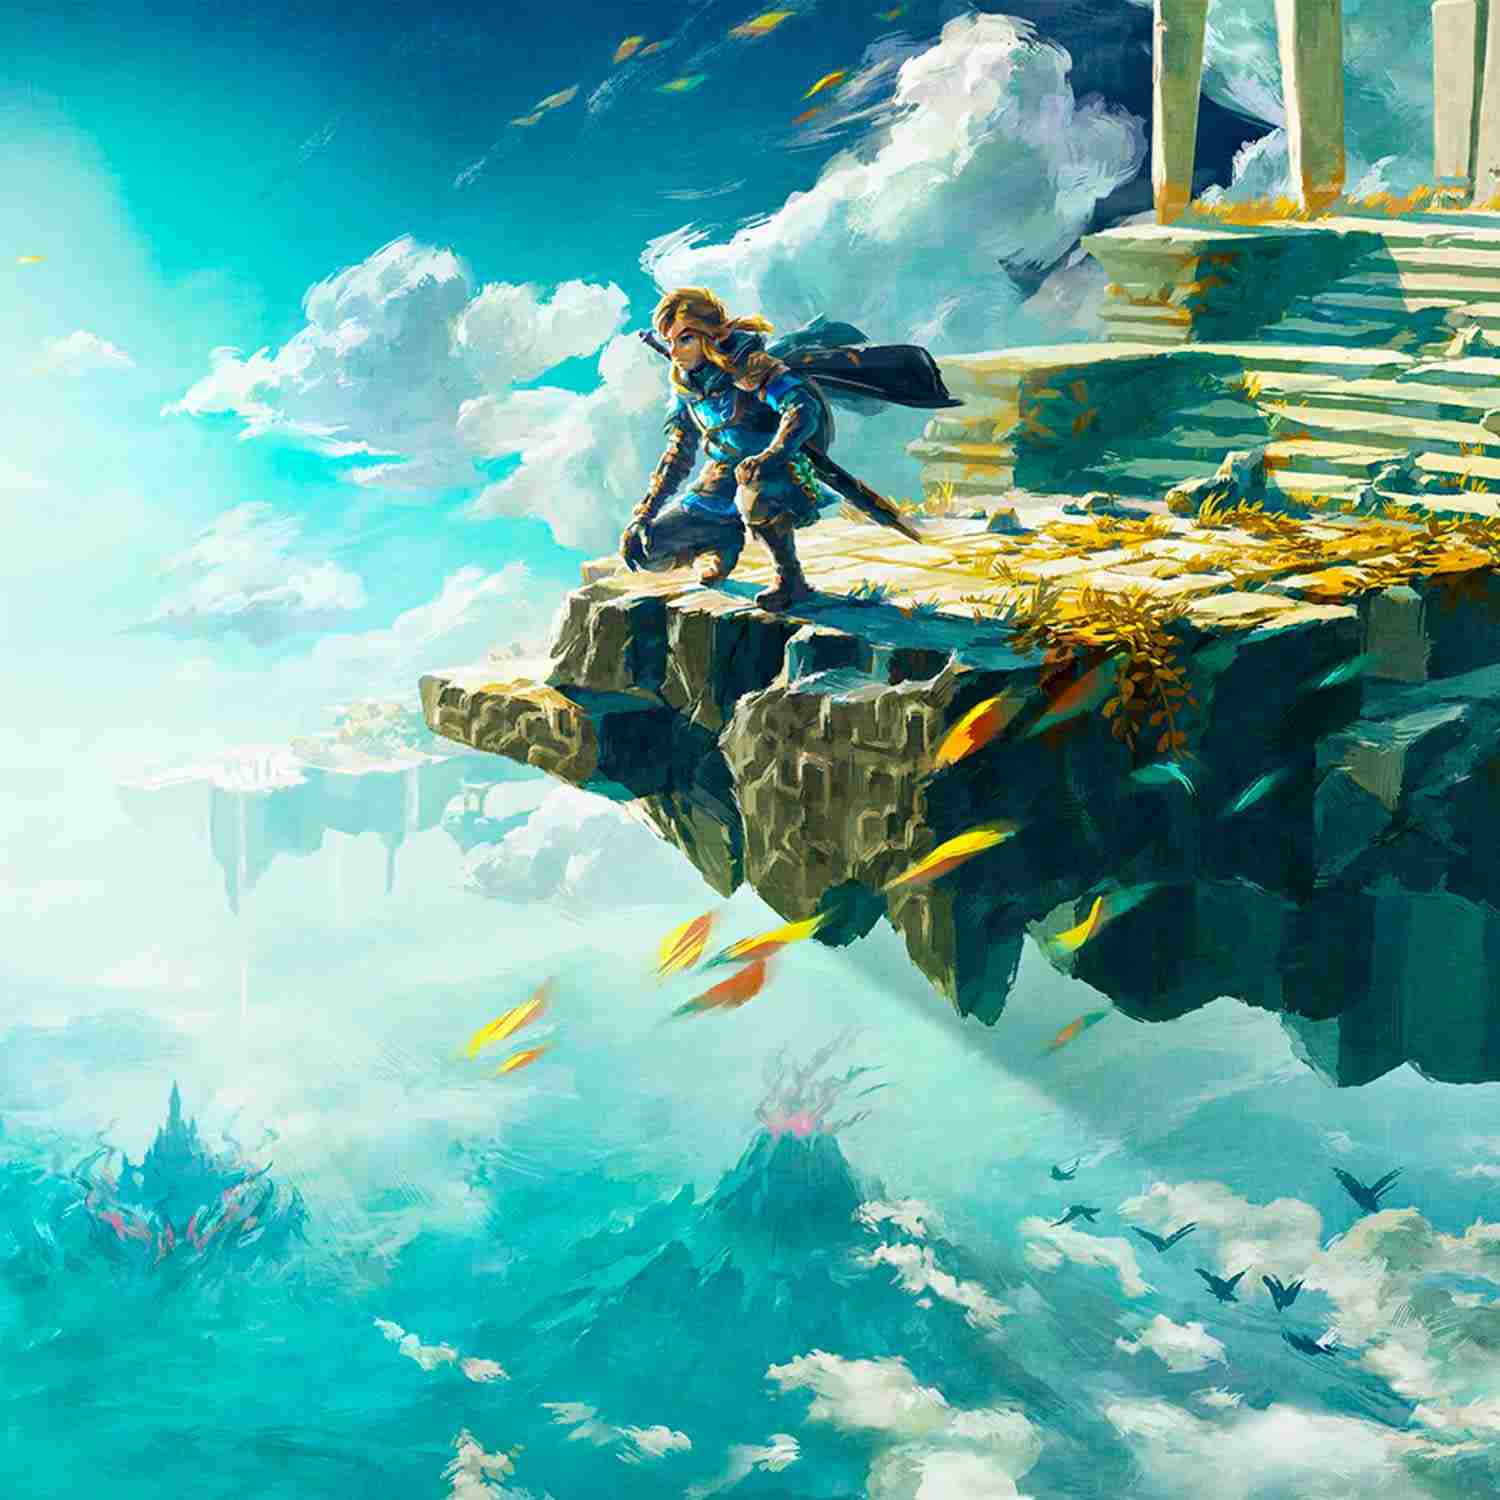 Descubre todo sobre el nuevo juego de The Legend of Zelda